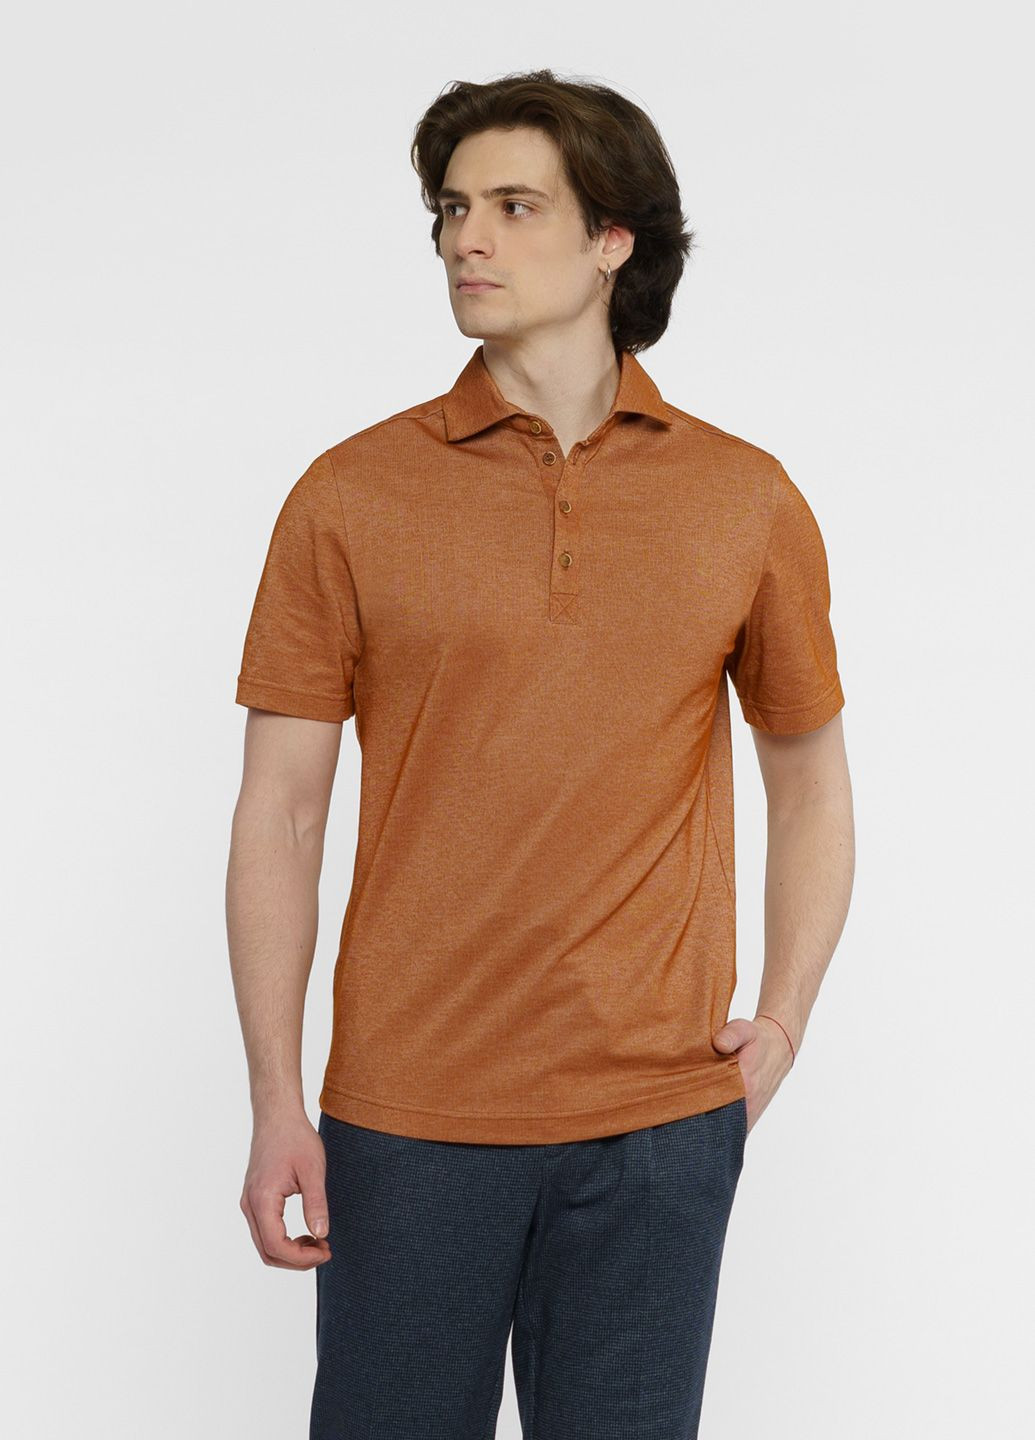 Коричневая футболка-поло мужское коричневое для мужчин Arber однотонная